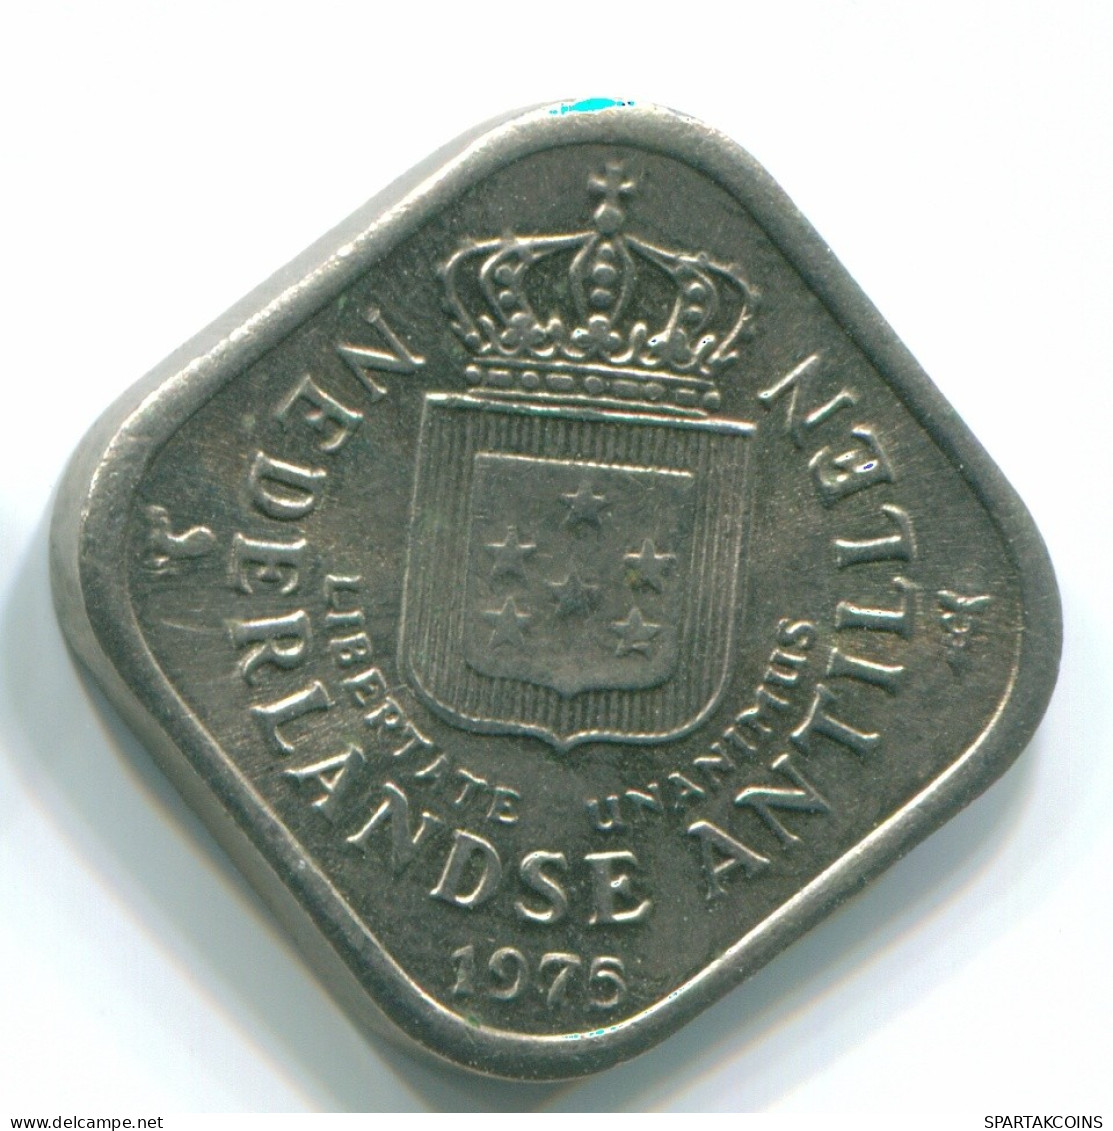 5 CENTS 1975 NETHERLANDS ANTILLES Nickel Colonial Coin #S12257.U.A - Niederländische Antillen